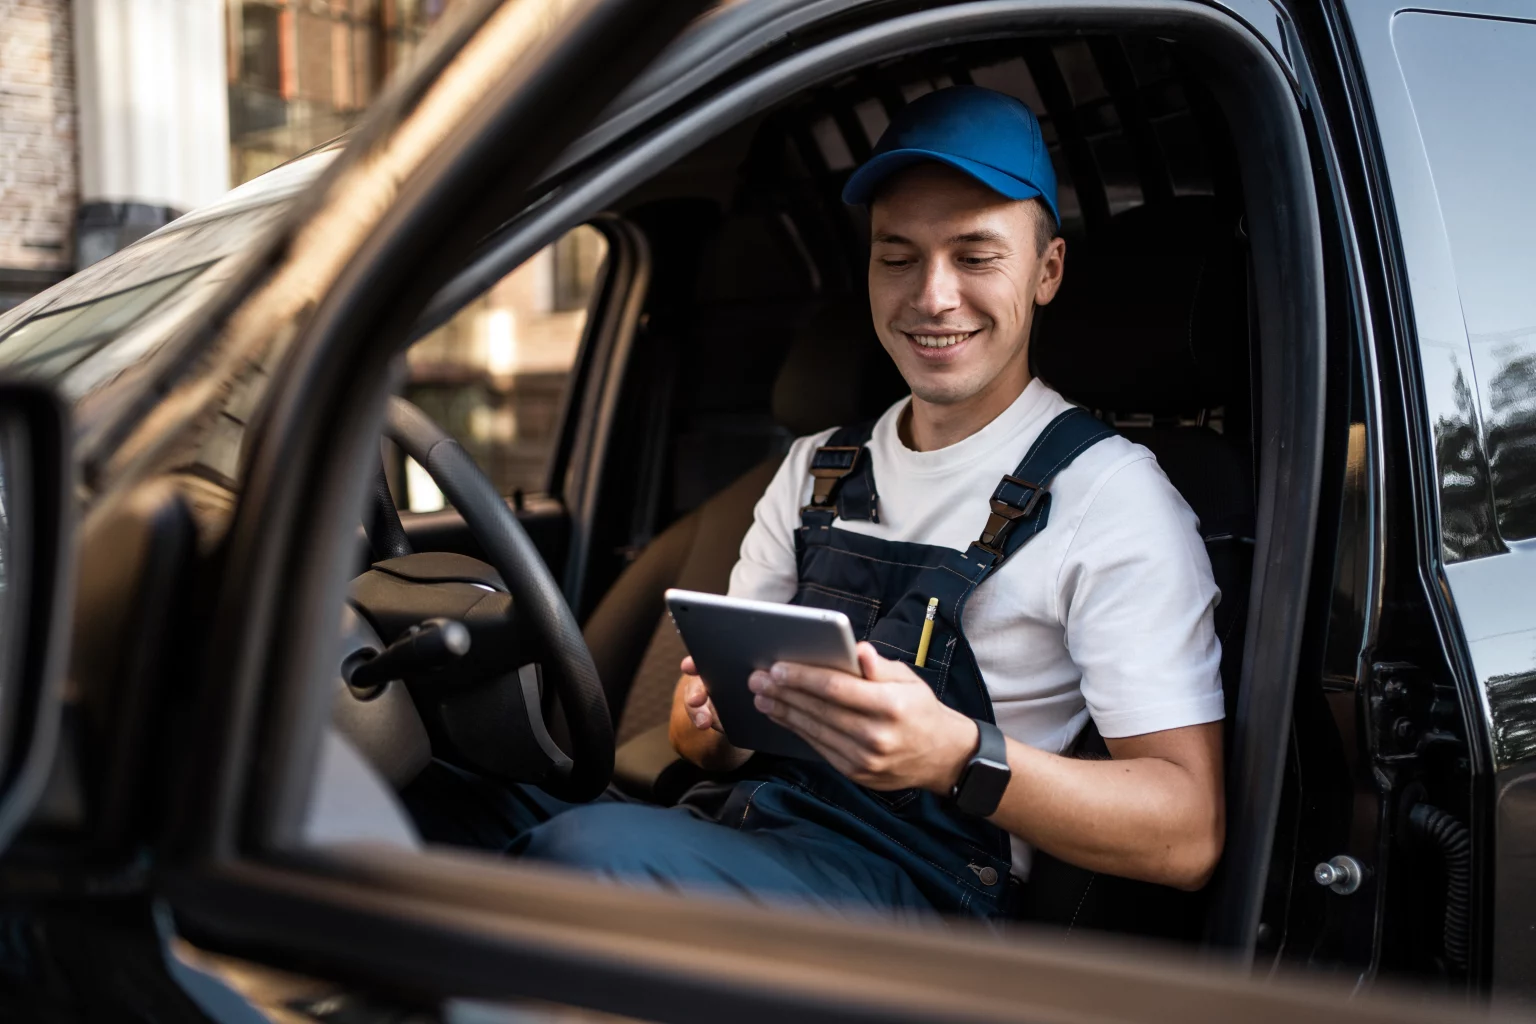 Chauffeur souriant en uniforme utilisant une tablette électronique pour organiser des livraisons, mettant en évidence la gestion efficace des transports.